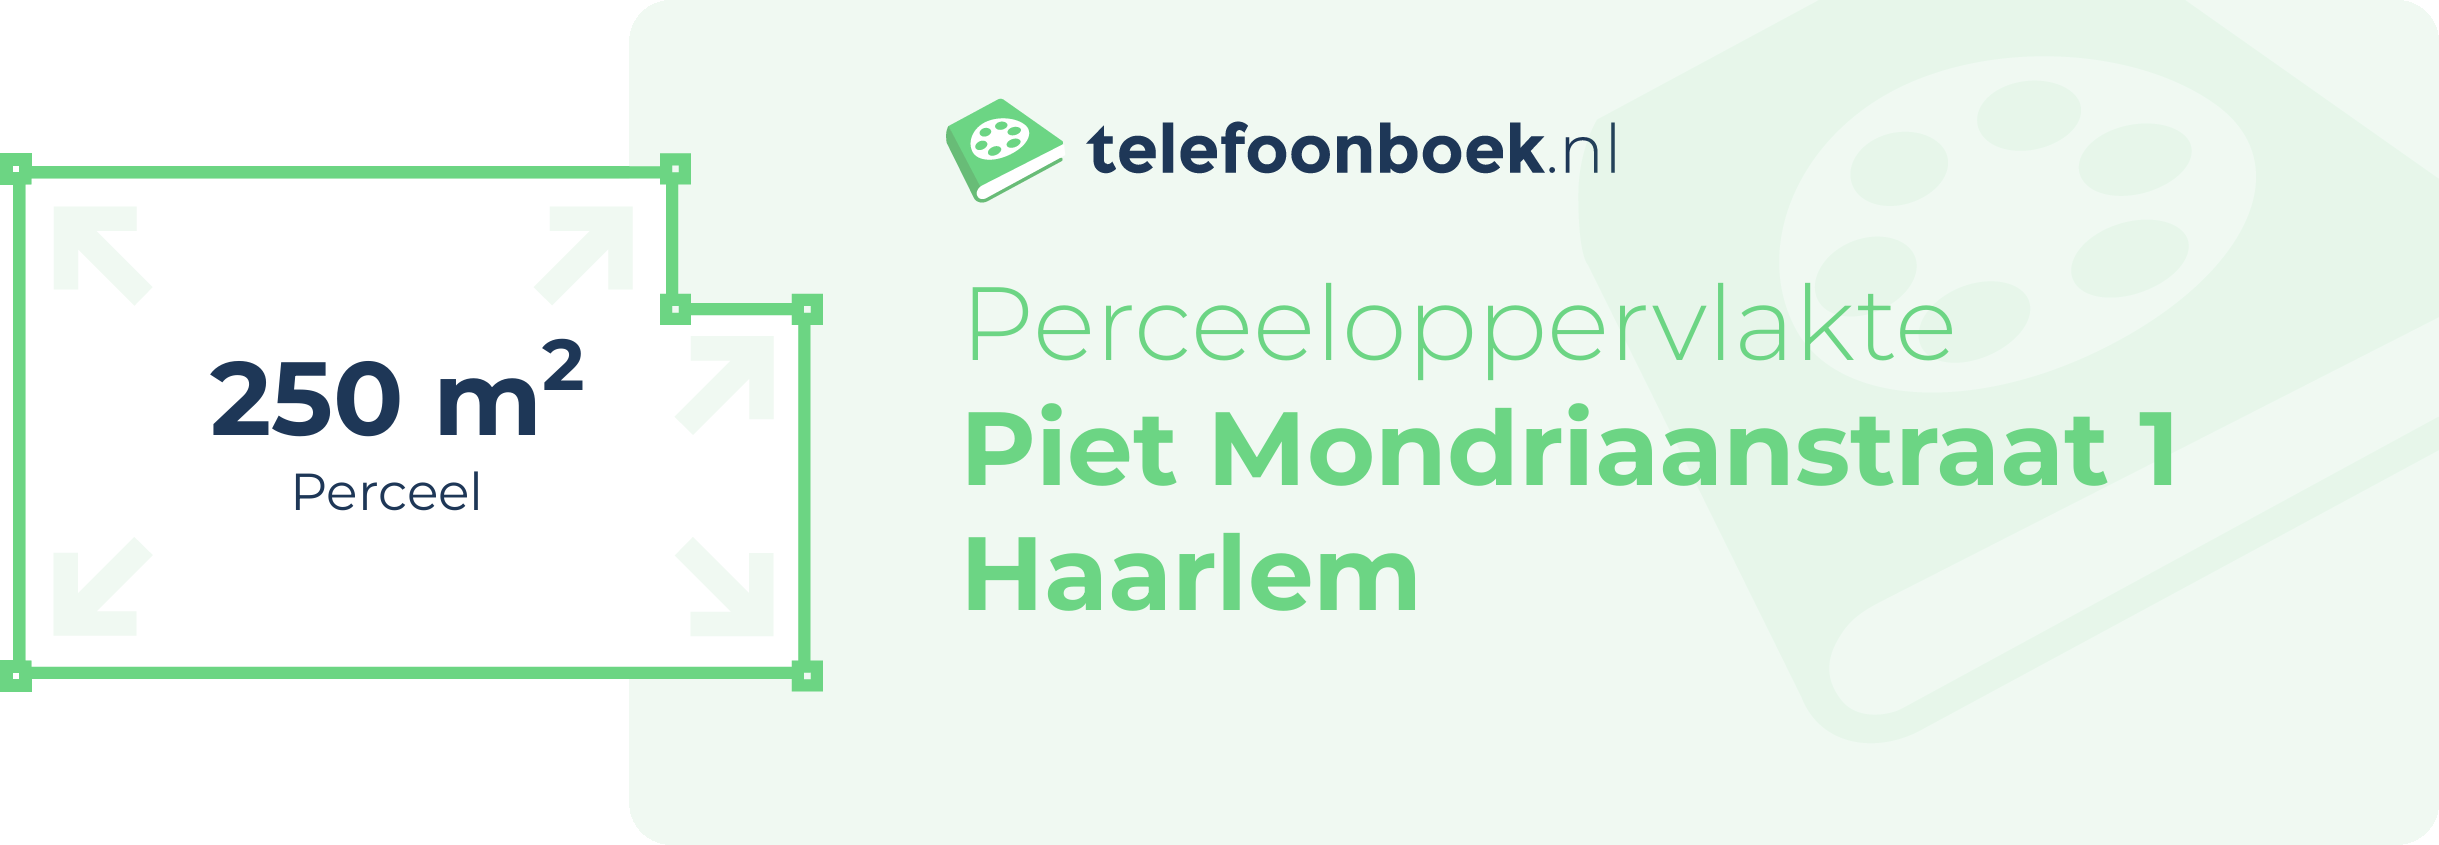 Perceeloppervlakte Piet Mondriaanstraat 1 Haarlem